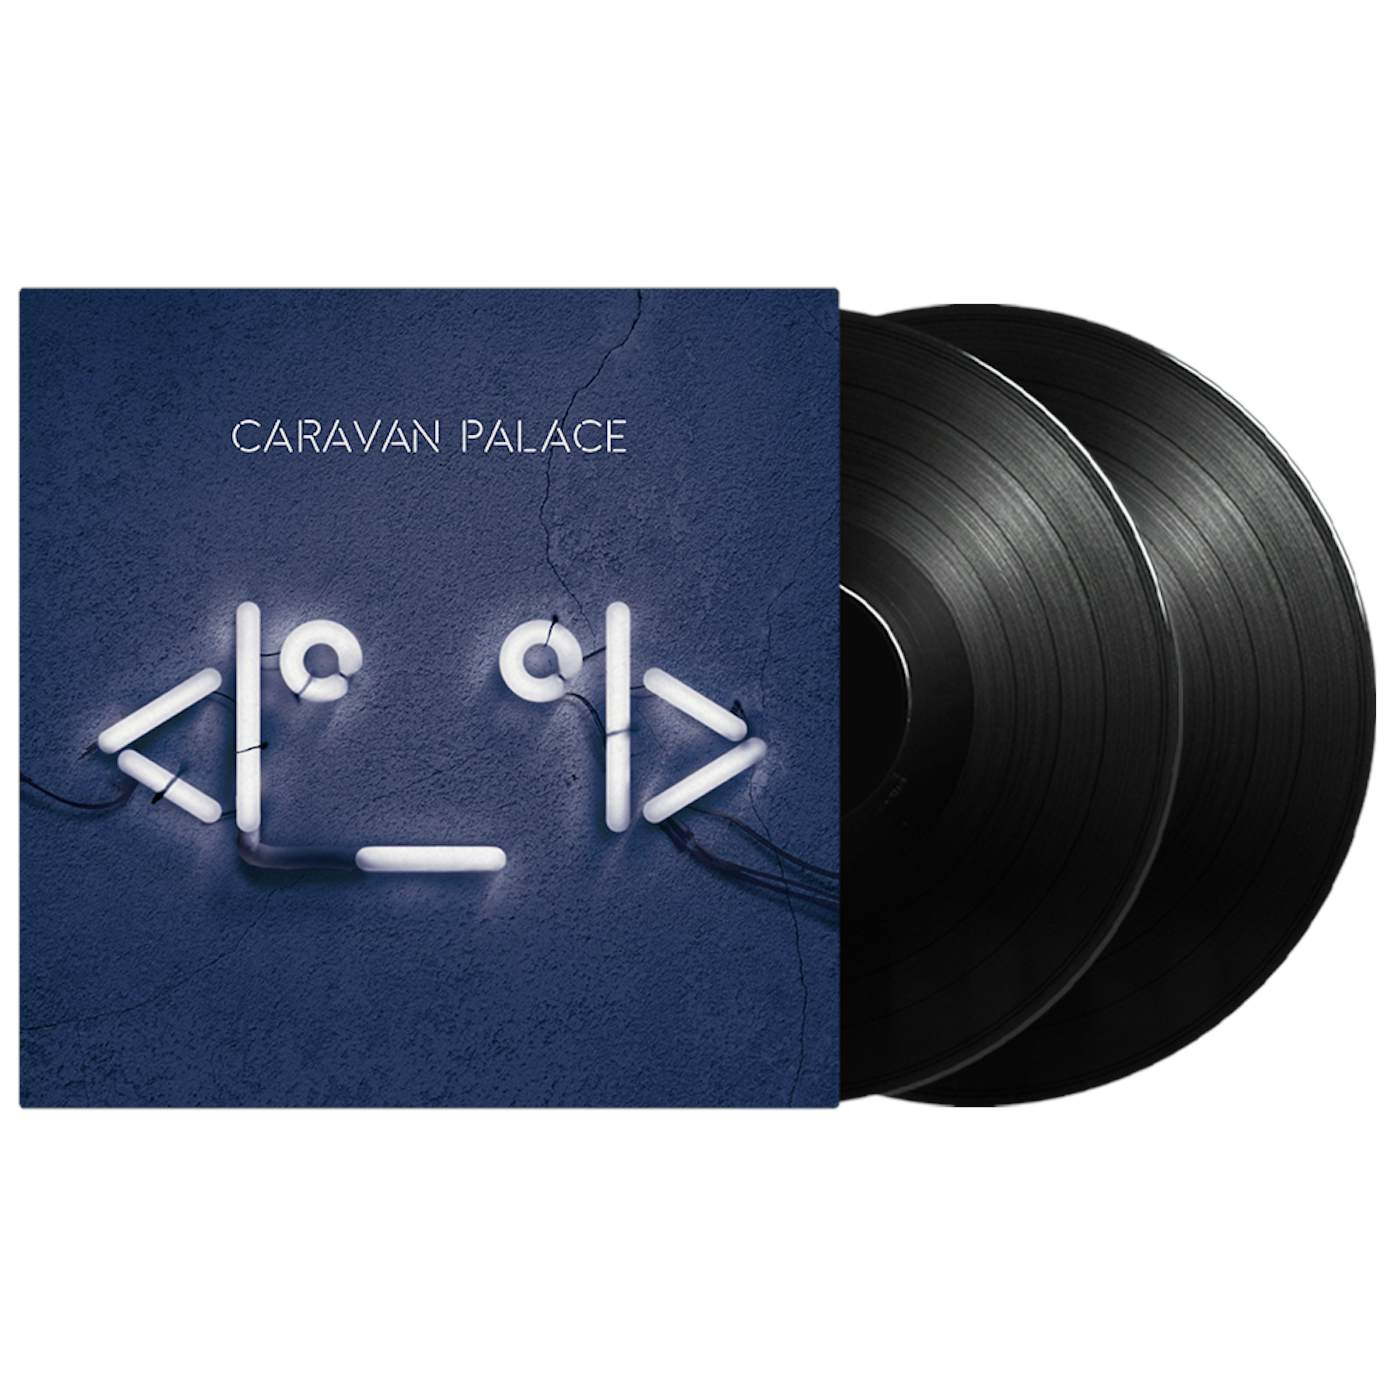 Caravan Palace <|º_º|> 2LP (Vinyl)